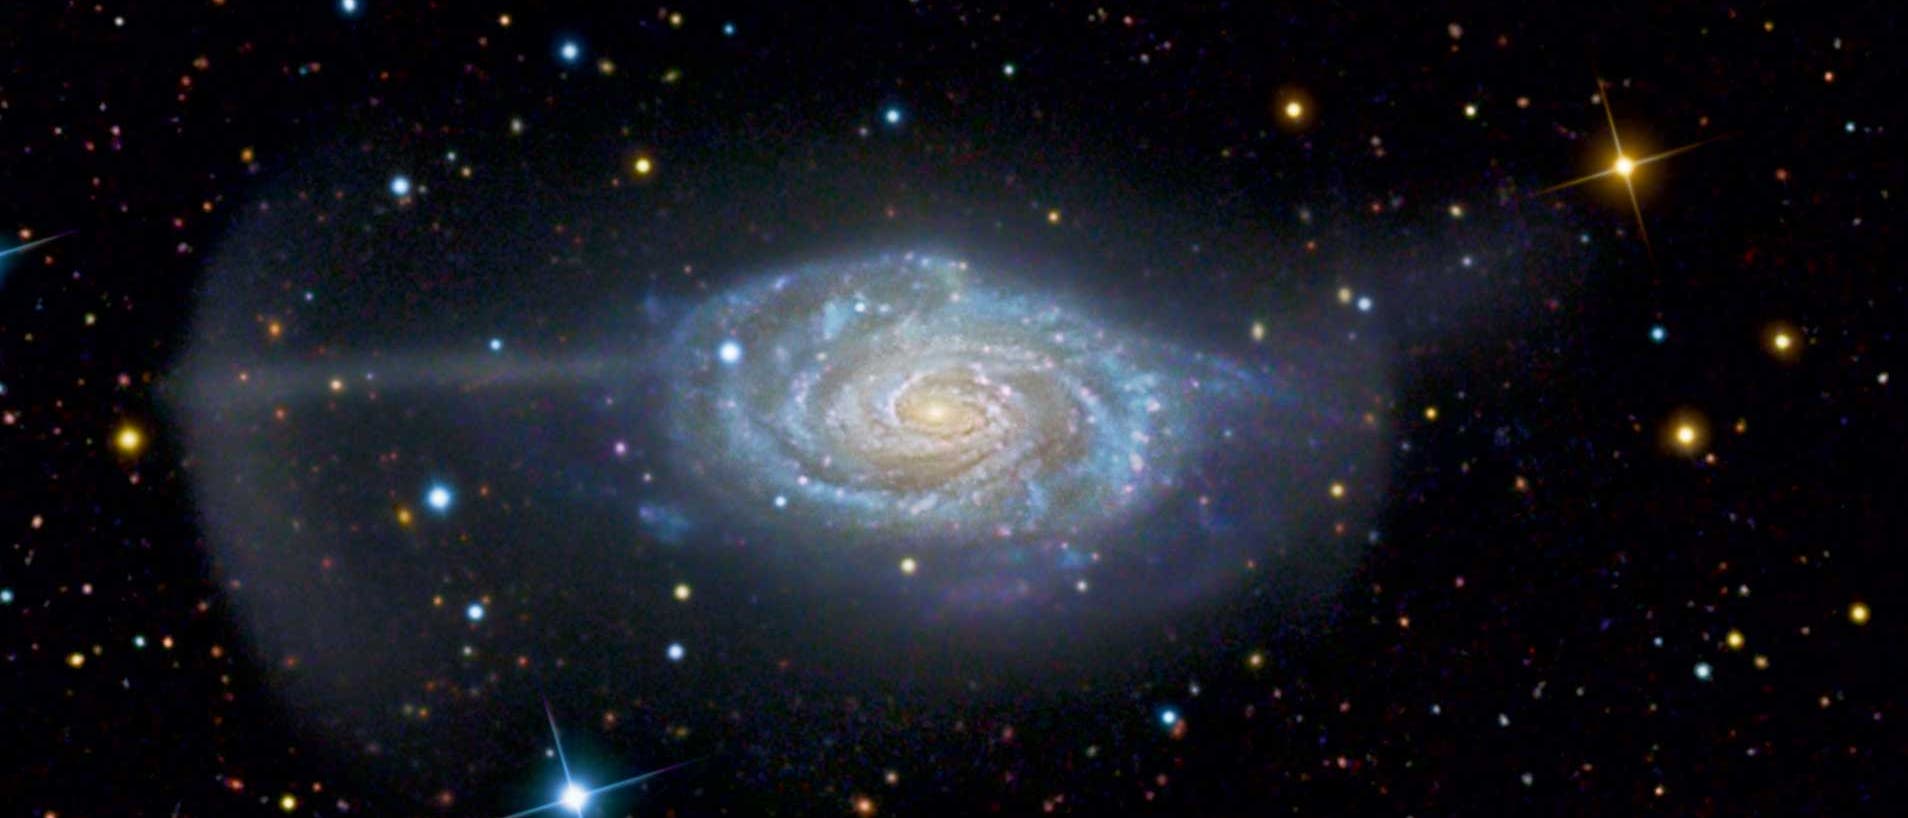 Die Spiralgalaxie NGC 4651